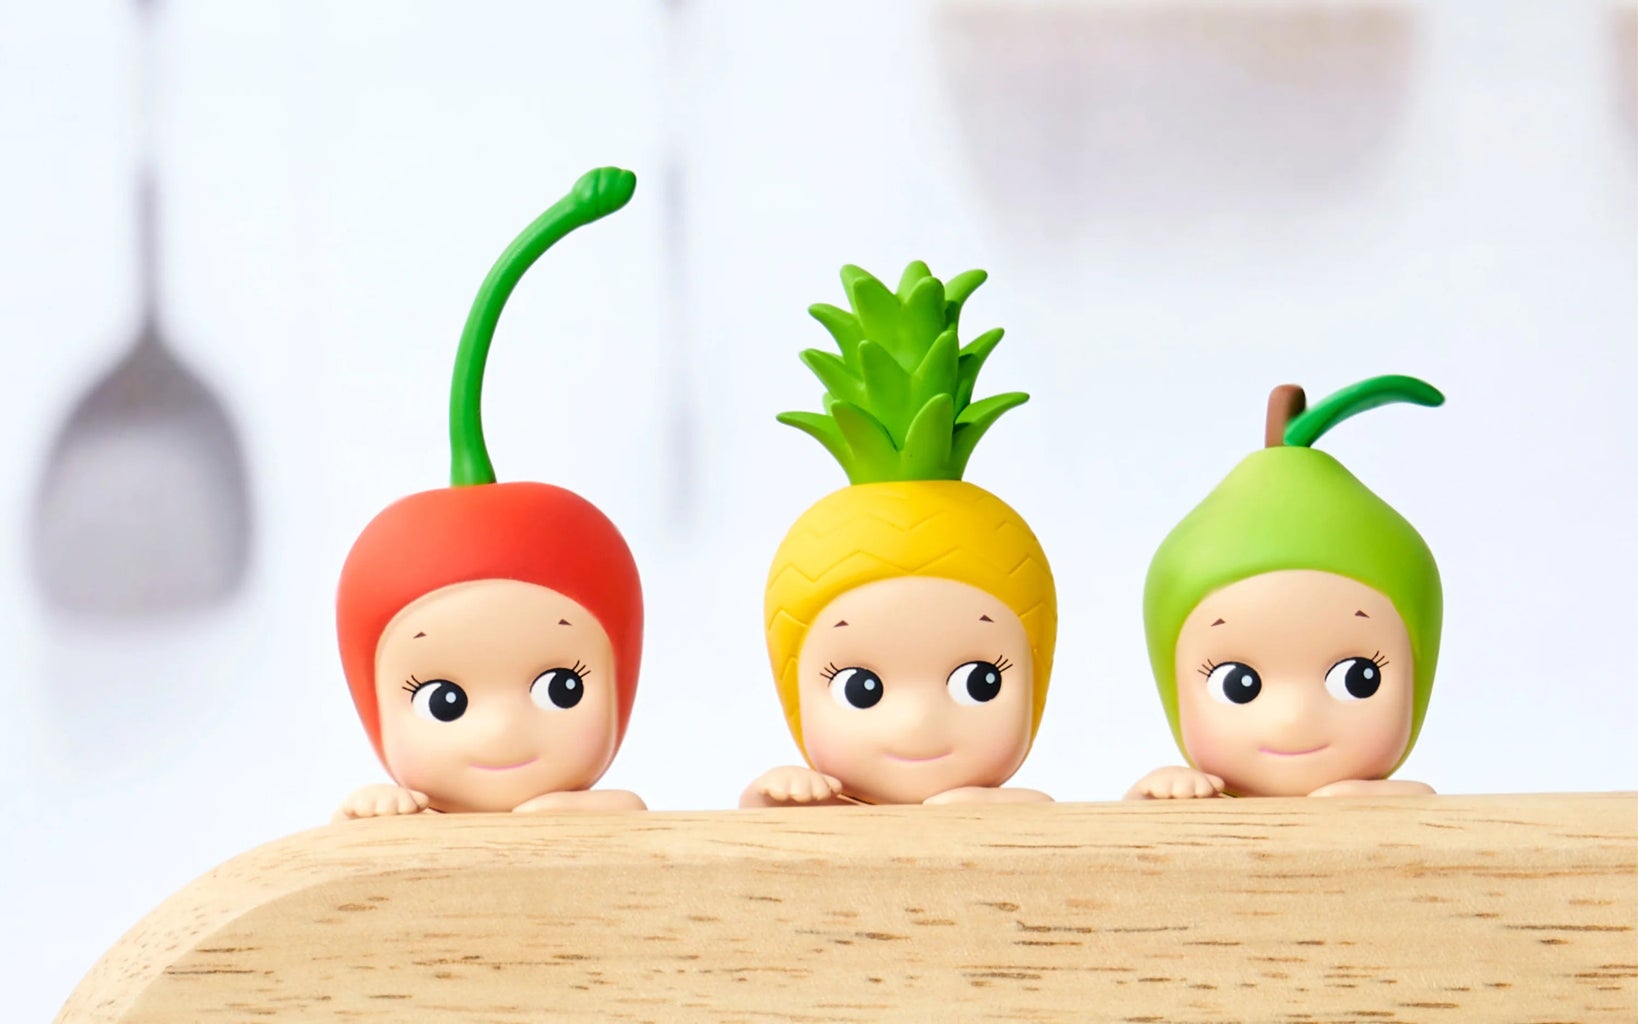 sonny angel fruit baby dolls